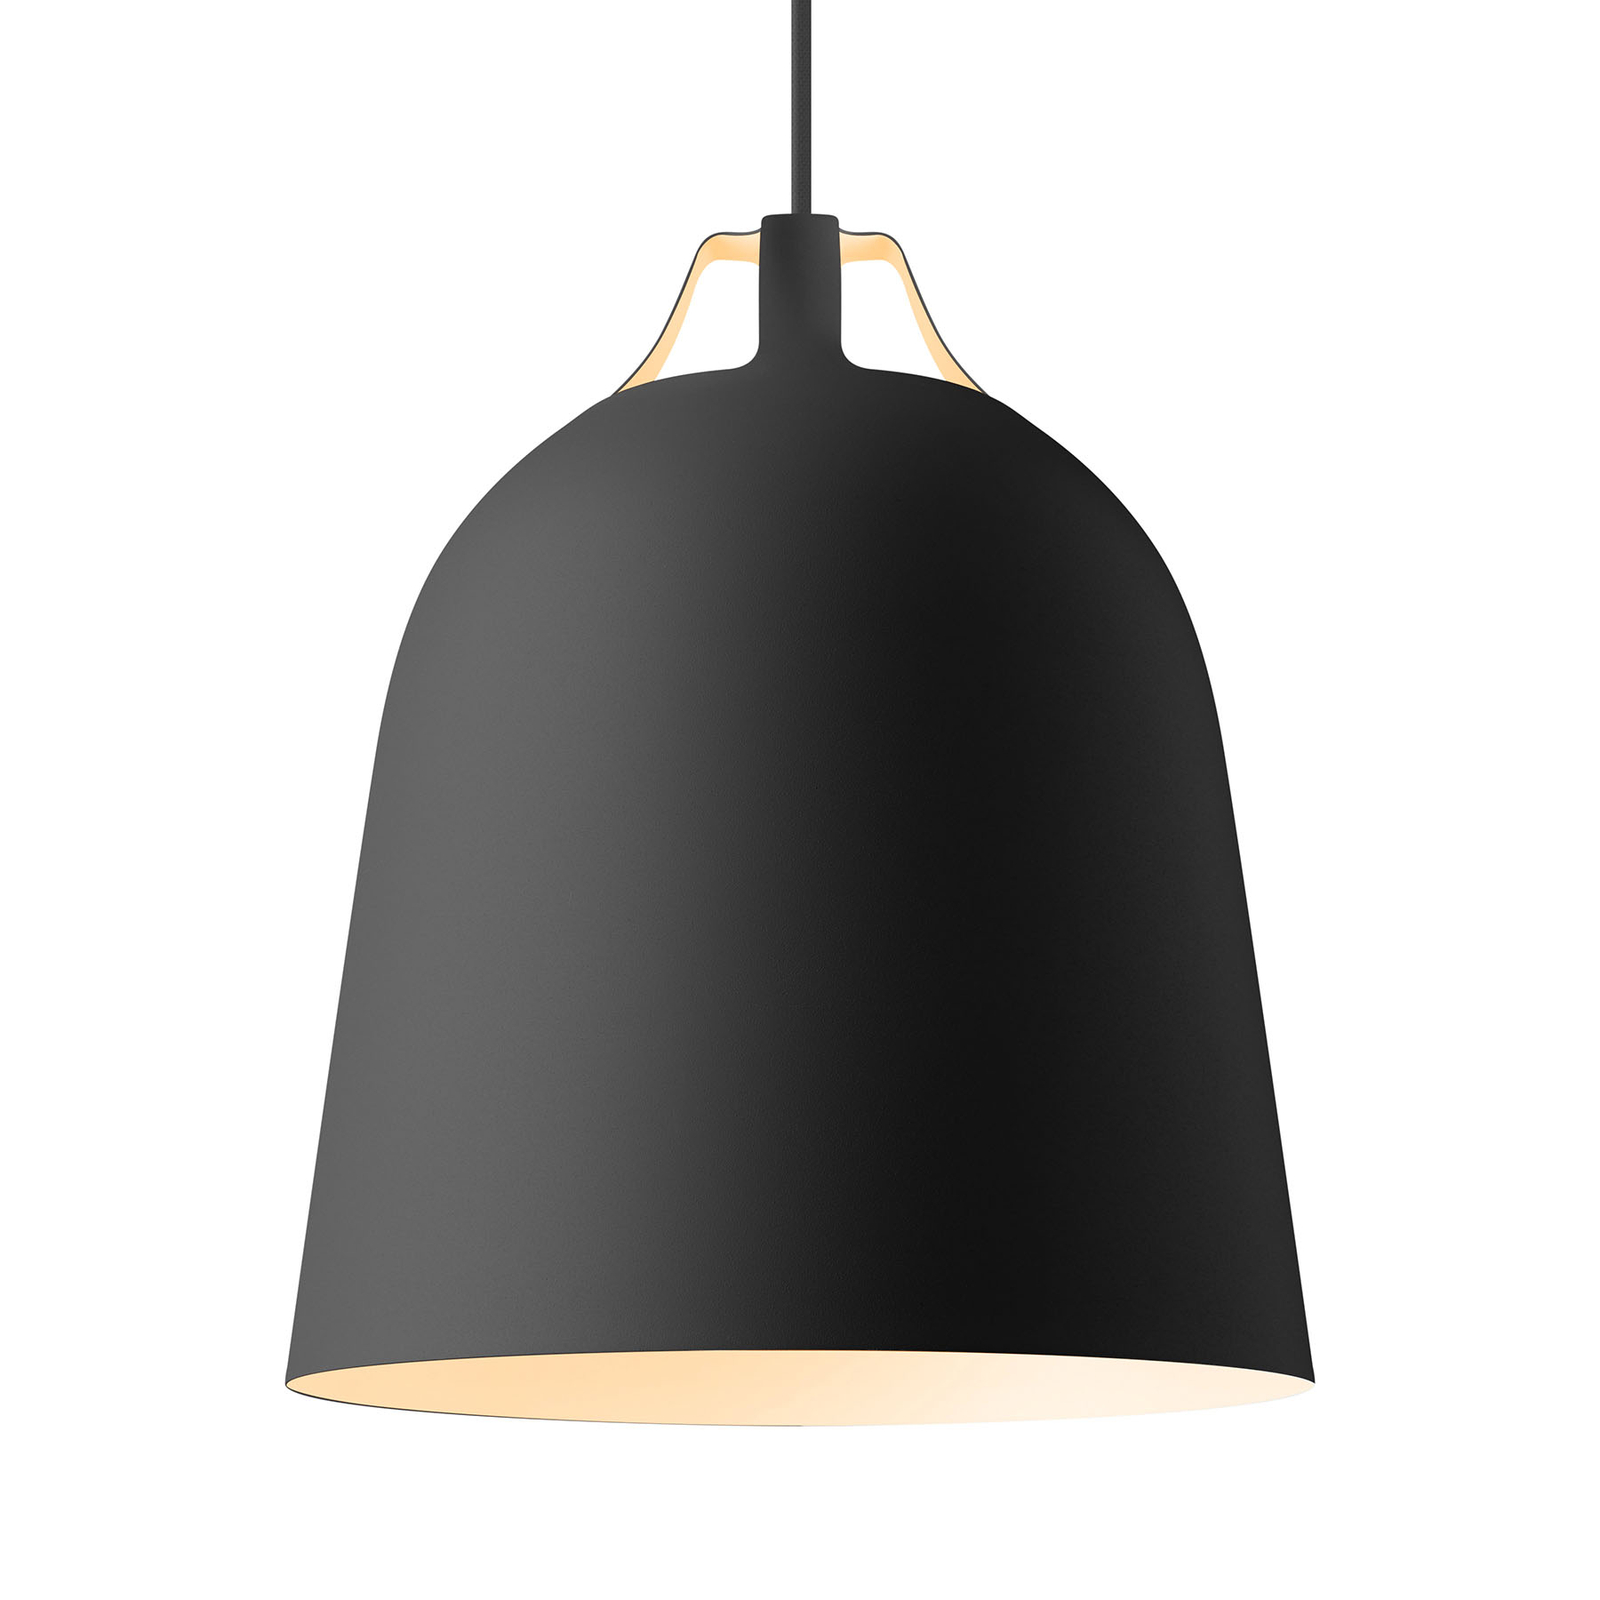 EVA Solo Clover hanglamp Ø 29cm, zwart